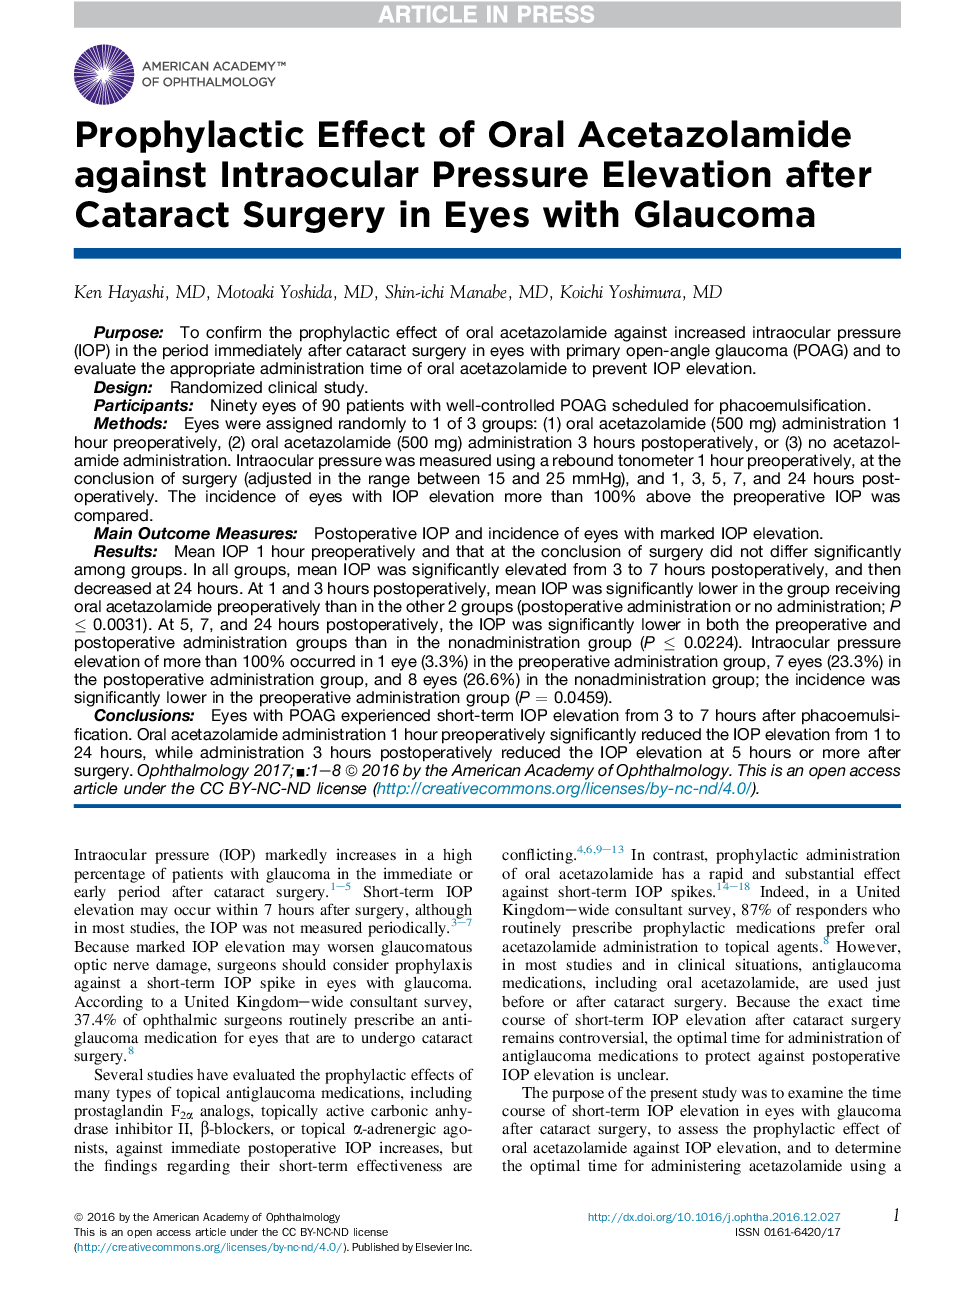 پیشگیرانه اثر استاتازولامید خوراکی بر افزایش فشار داخل چشمی پس از جراحی کاتاراکت در چشم با گلوکوم 